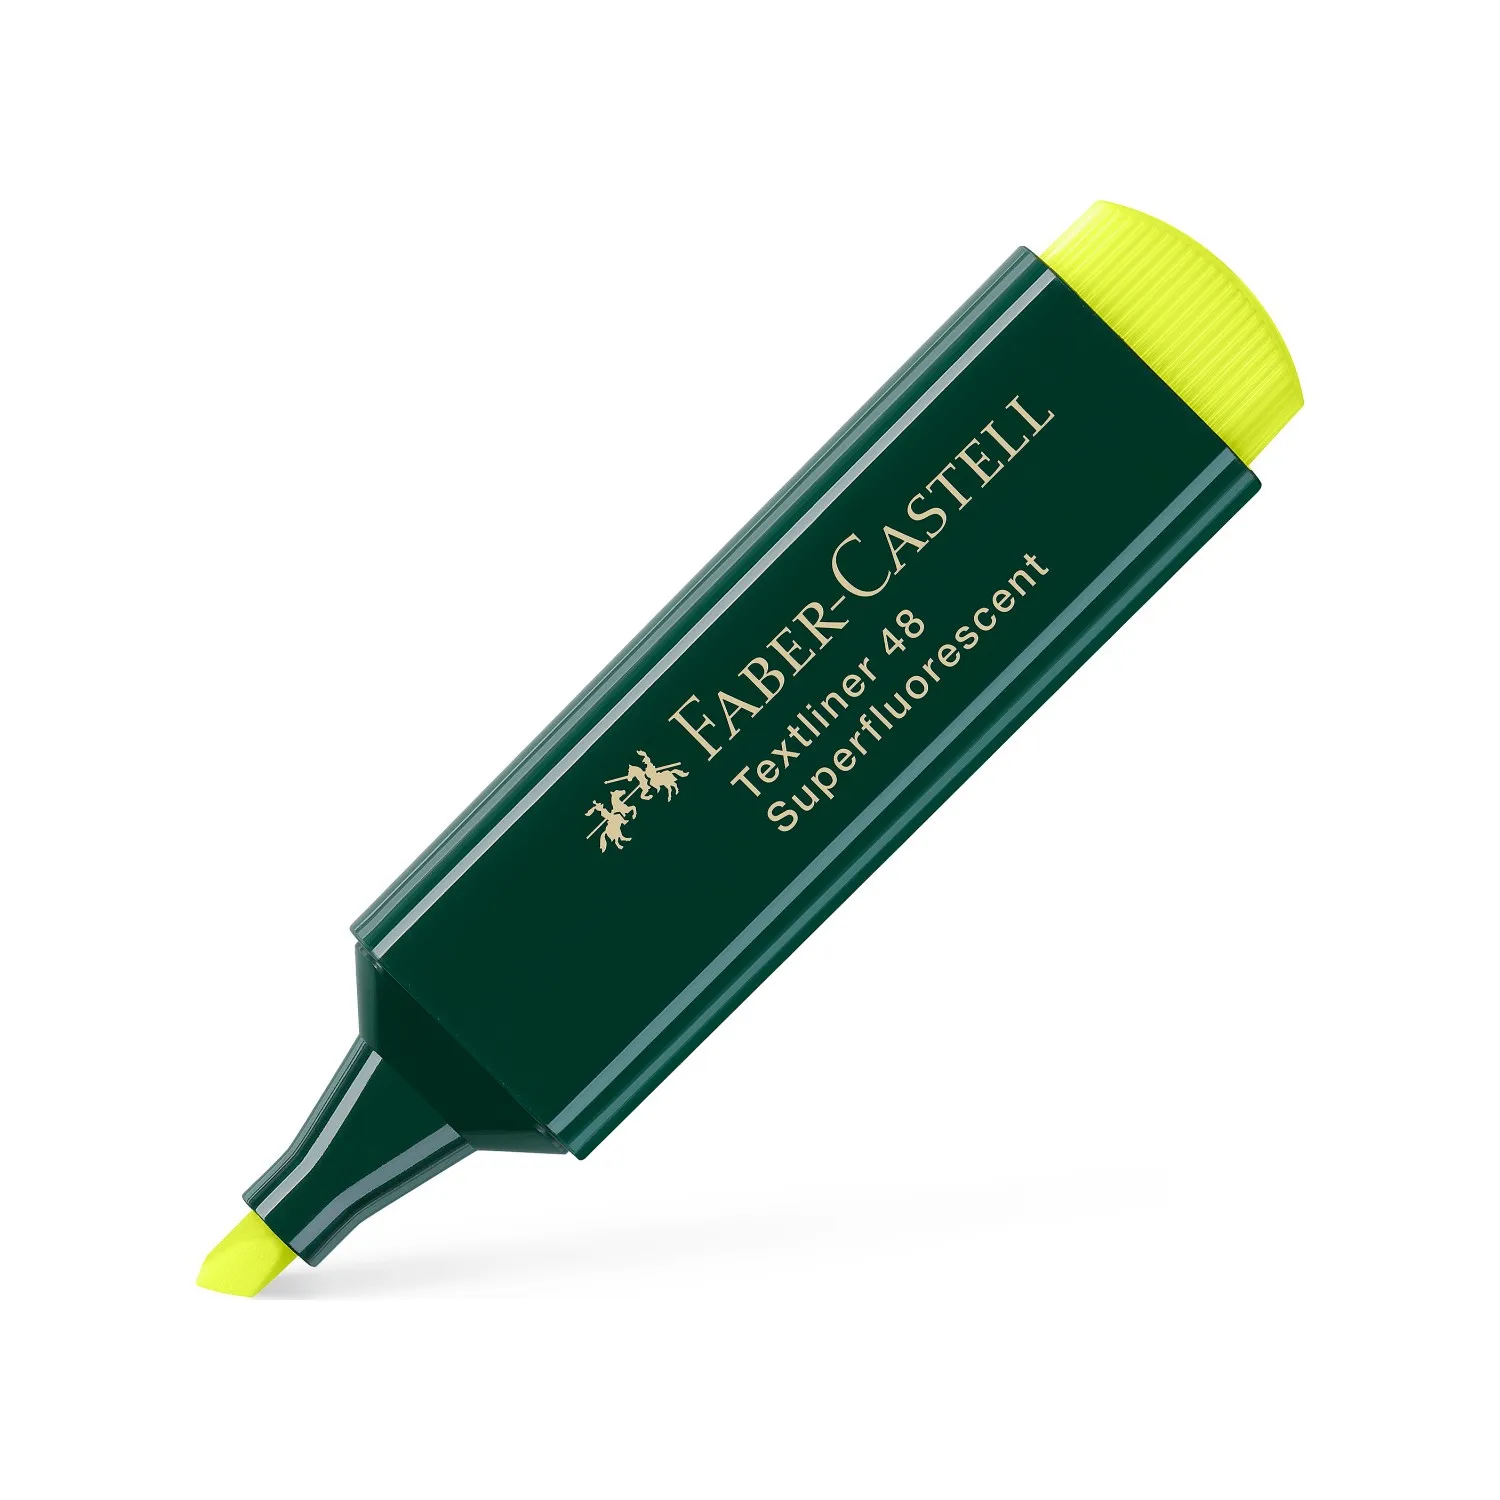 Faber-Castell Green Body хайлайтер 6 + 2-идеальный качественный продукт для многофункциональных пользователей в школе, на экзамен, в офисе, до